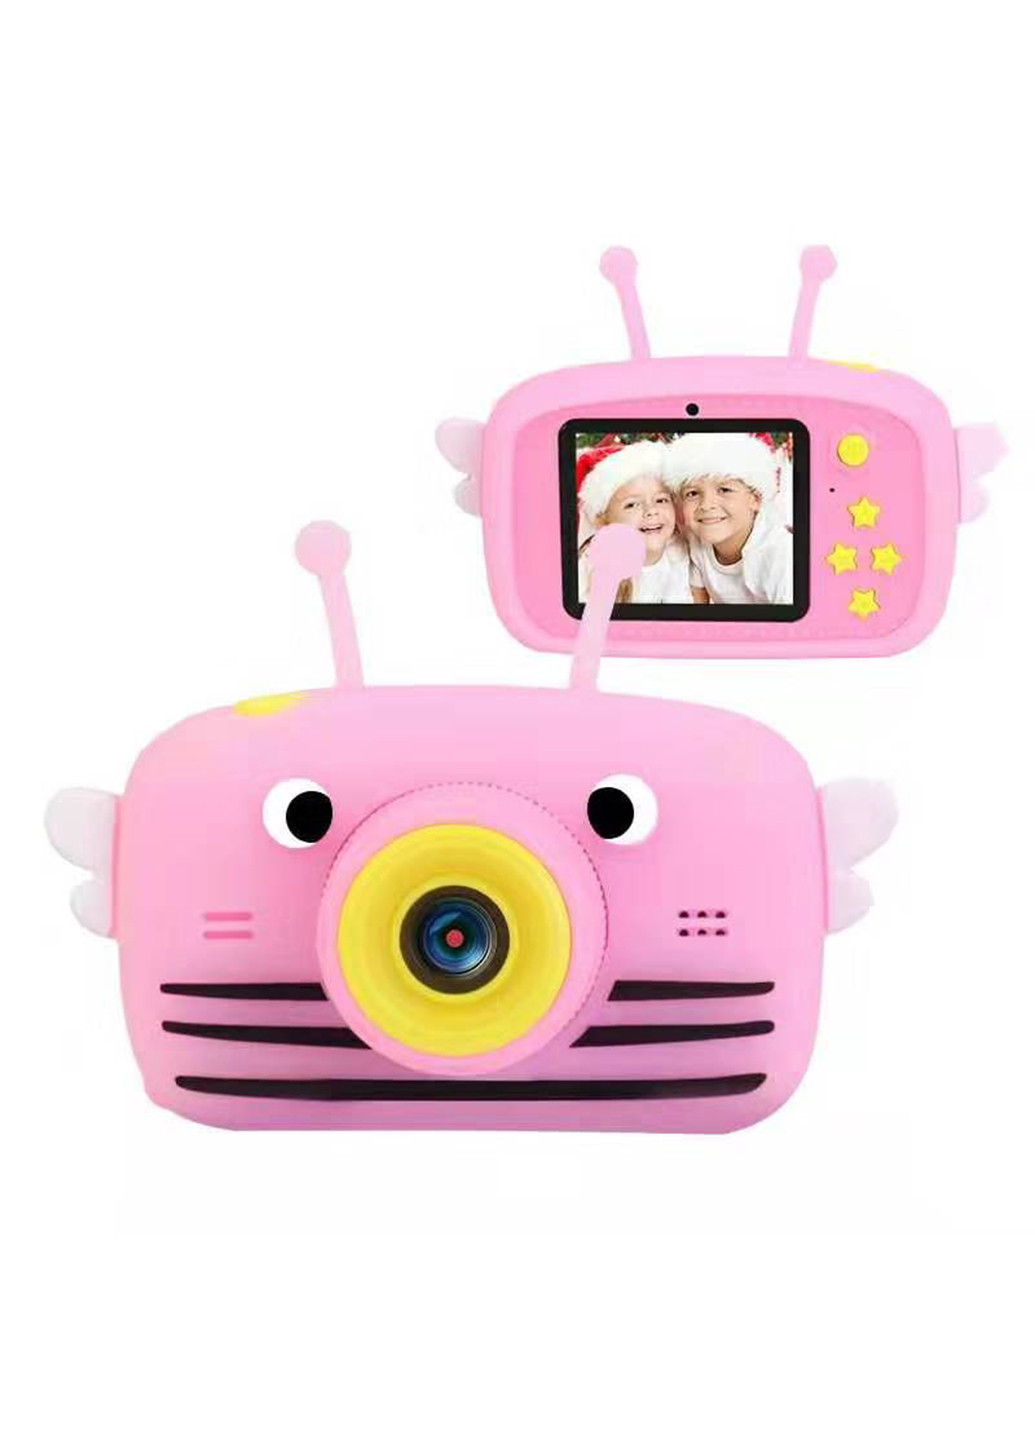 Цифровой детский фотоаппарат KVR-100 Bee Dual Lens розовый () XoKo kvr-100-pn (171738974)